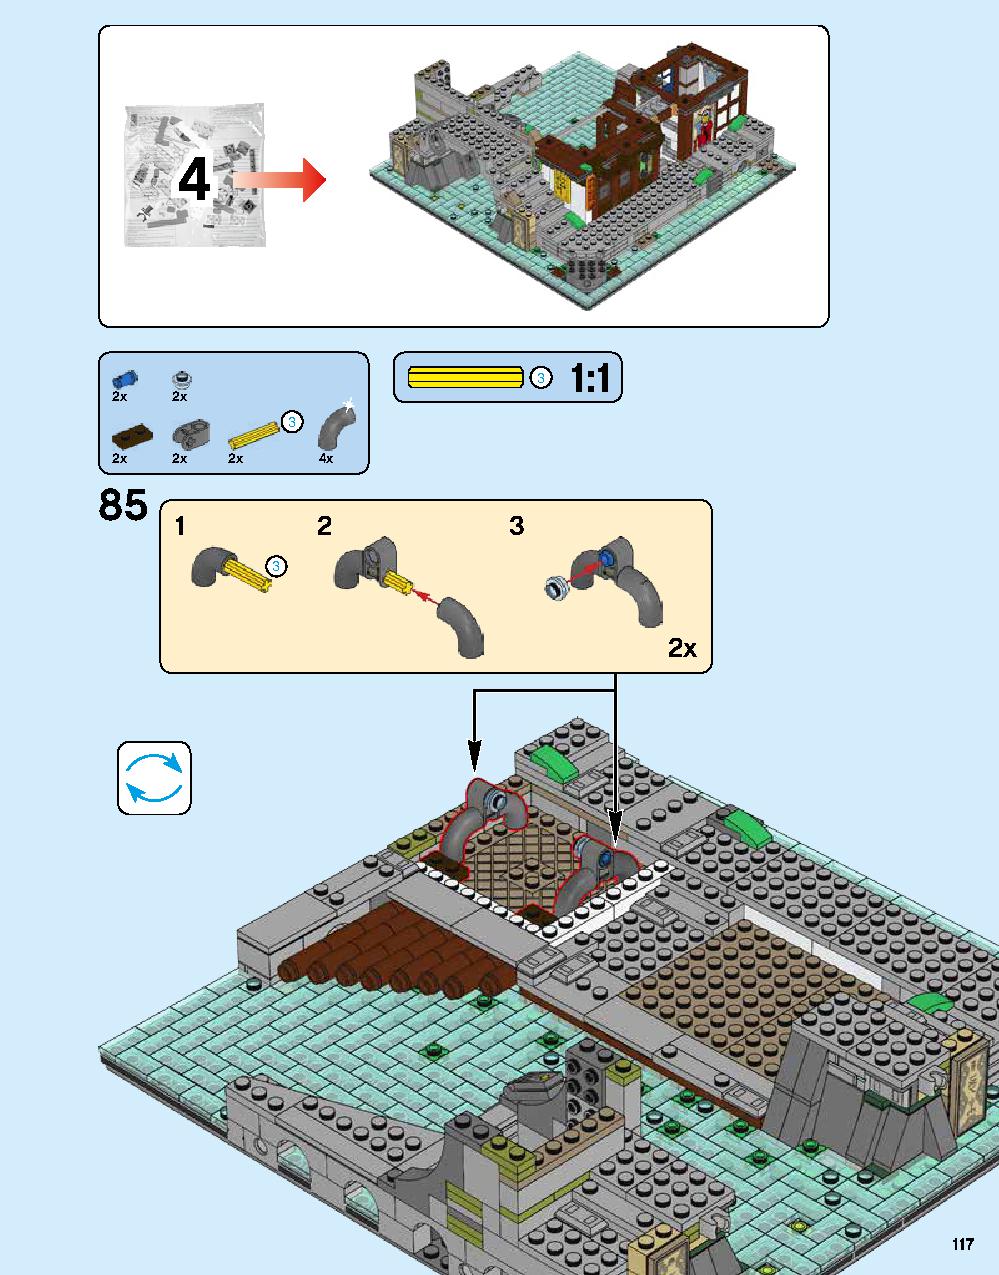 ニンジャゴー シティ 70620 レゴの商品情報 レゴの説明書・組立方法 117 page